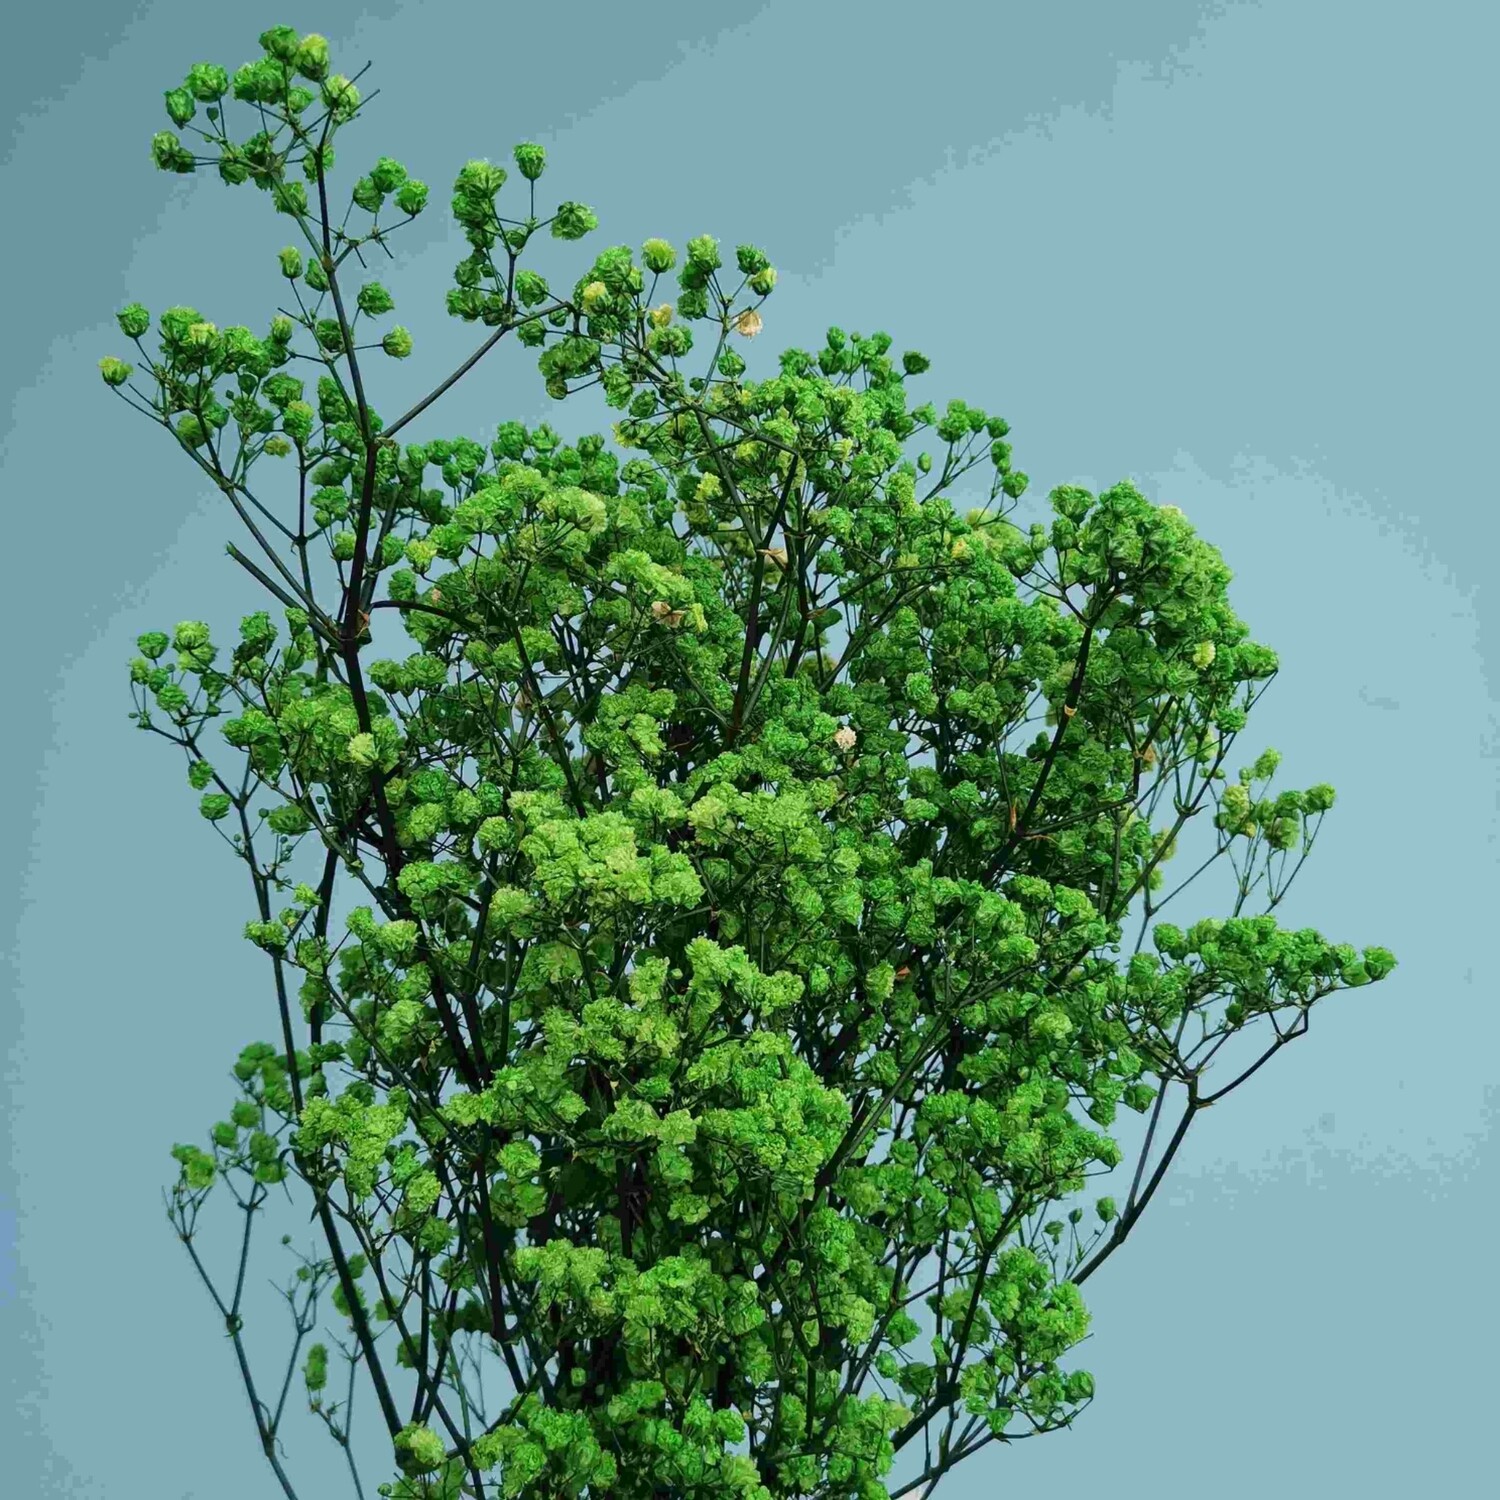 Gypsophila green stabilized